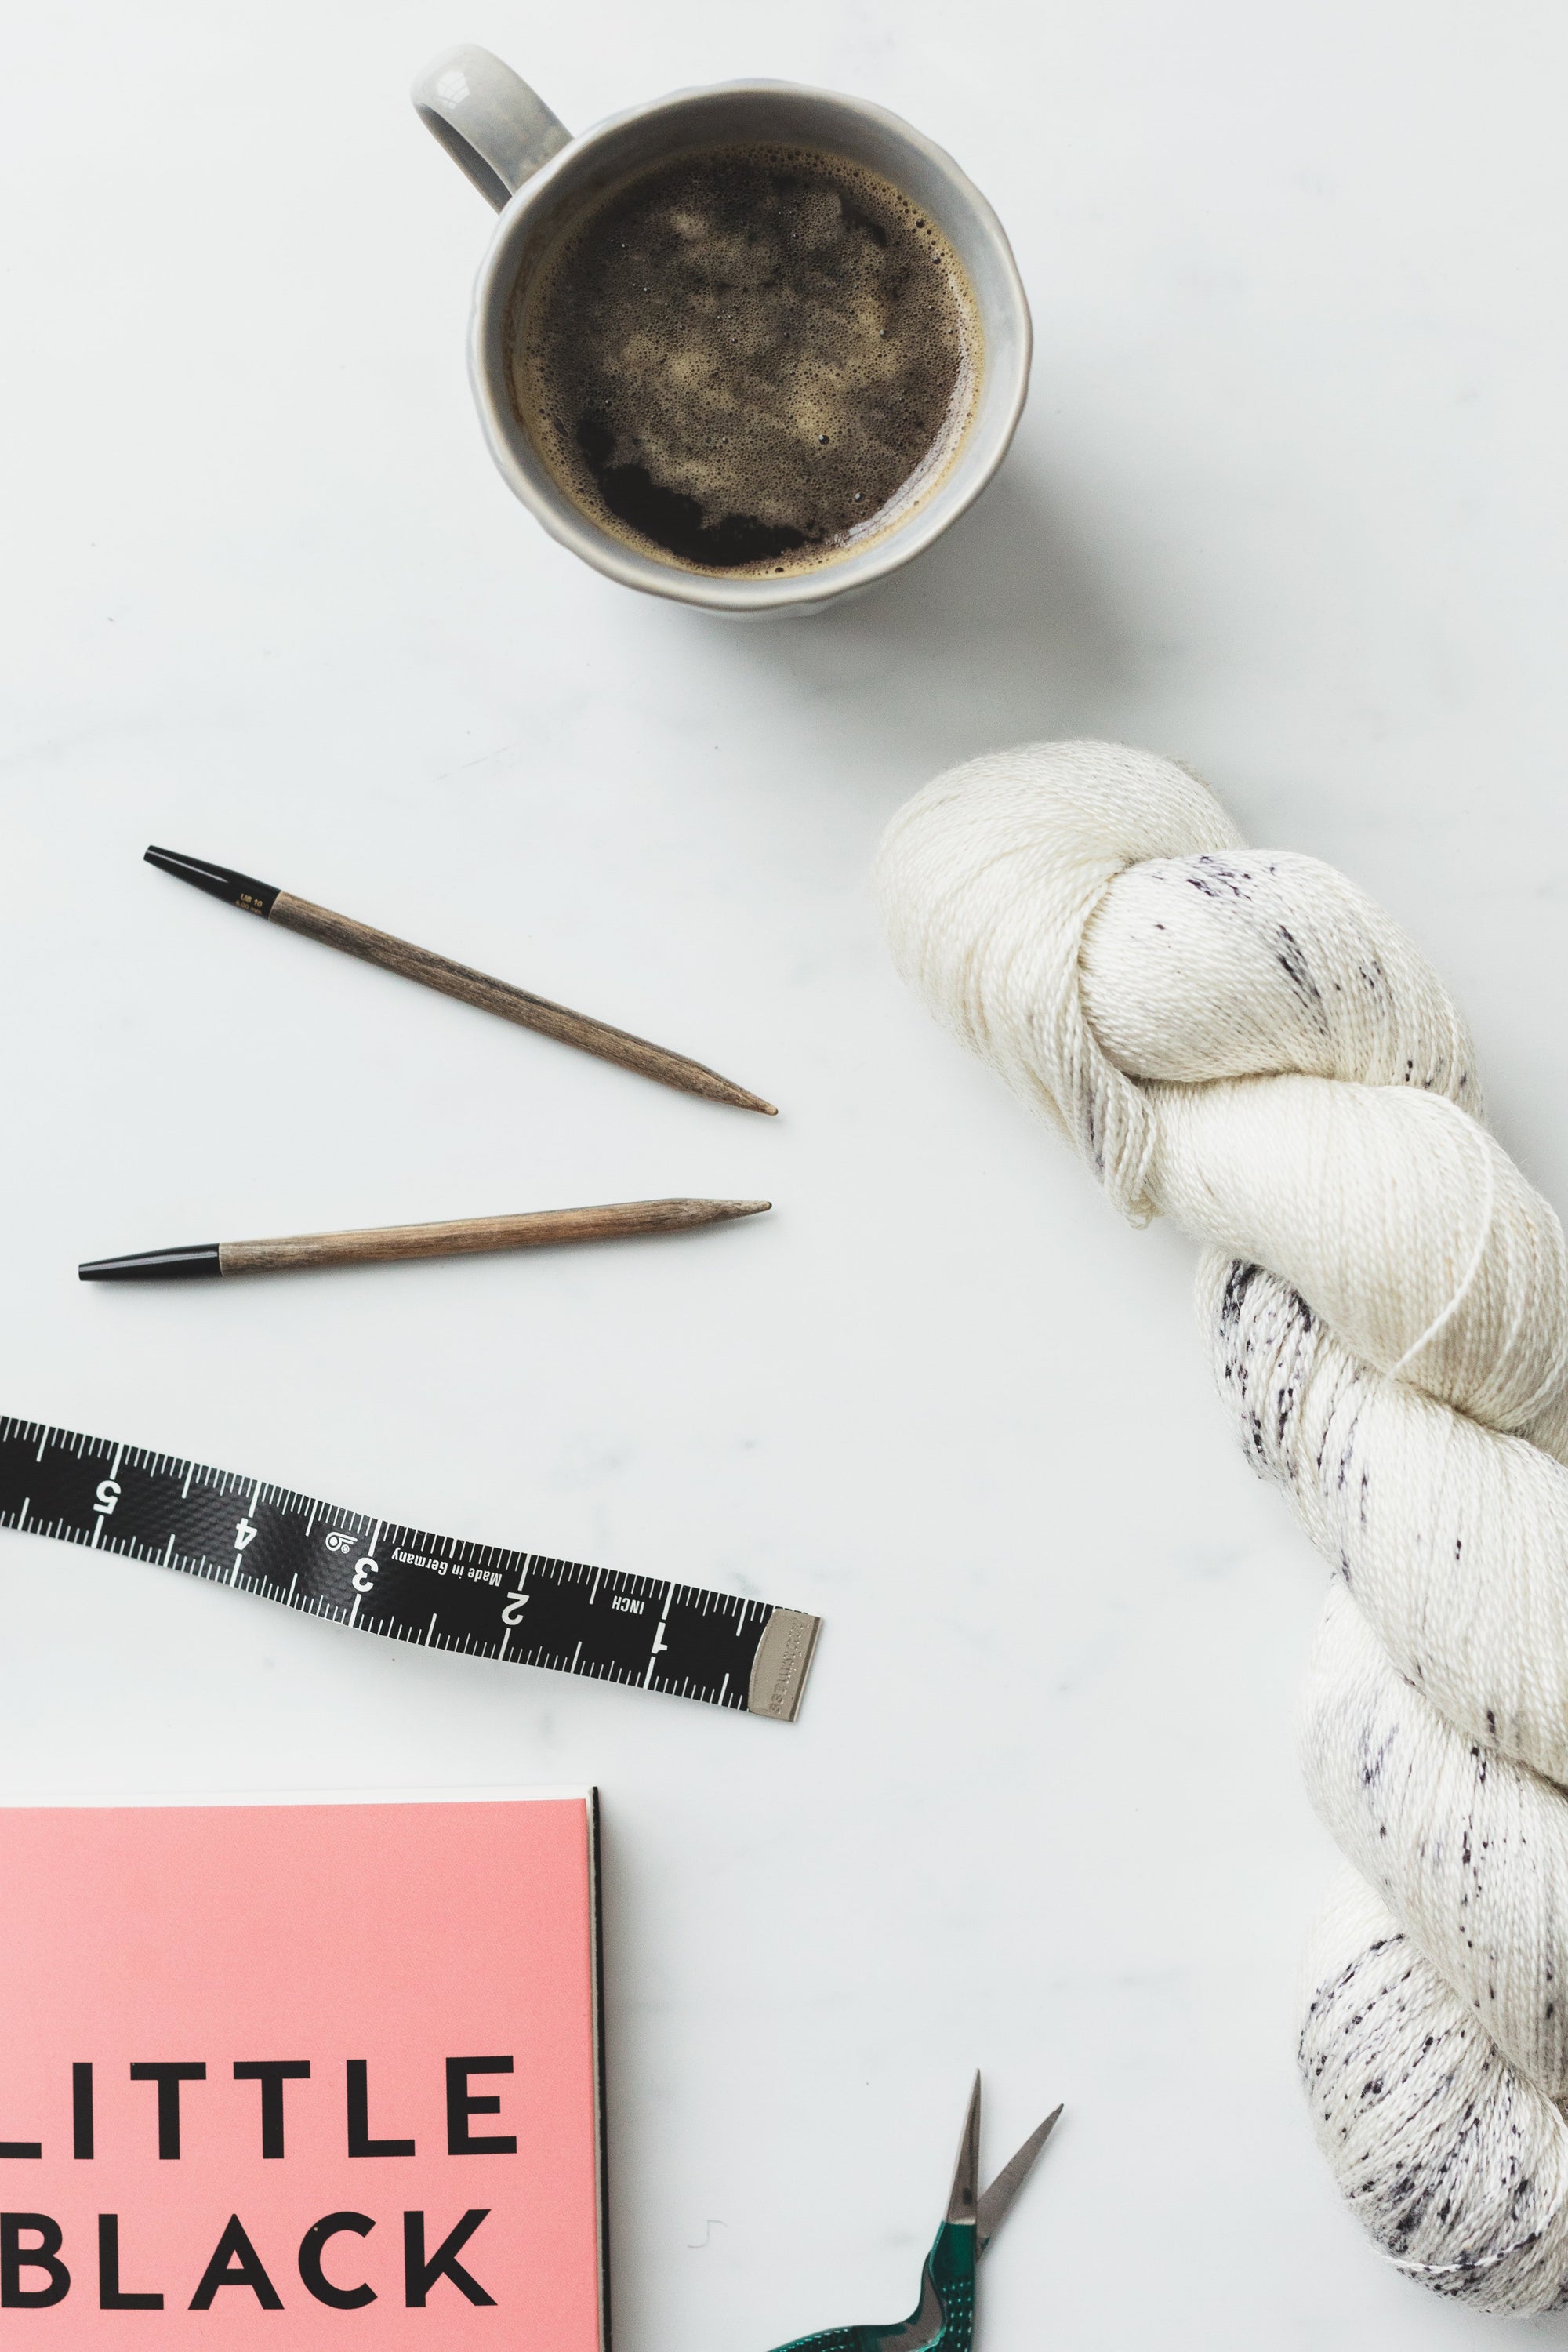 10 Best Knitting Kits for Beginners of 2024 - Knitting News